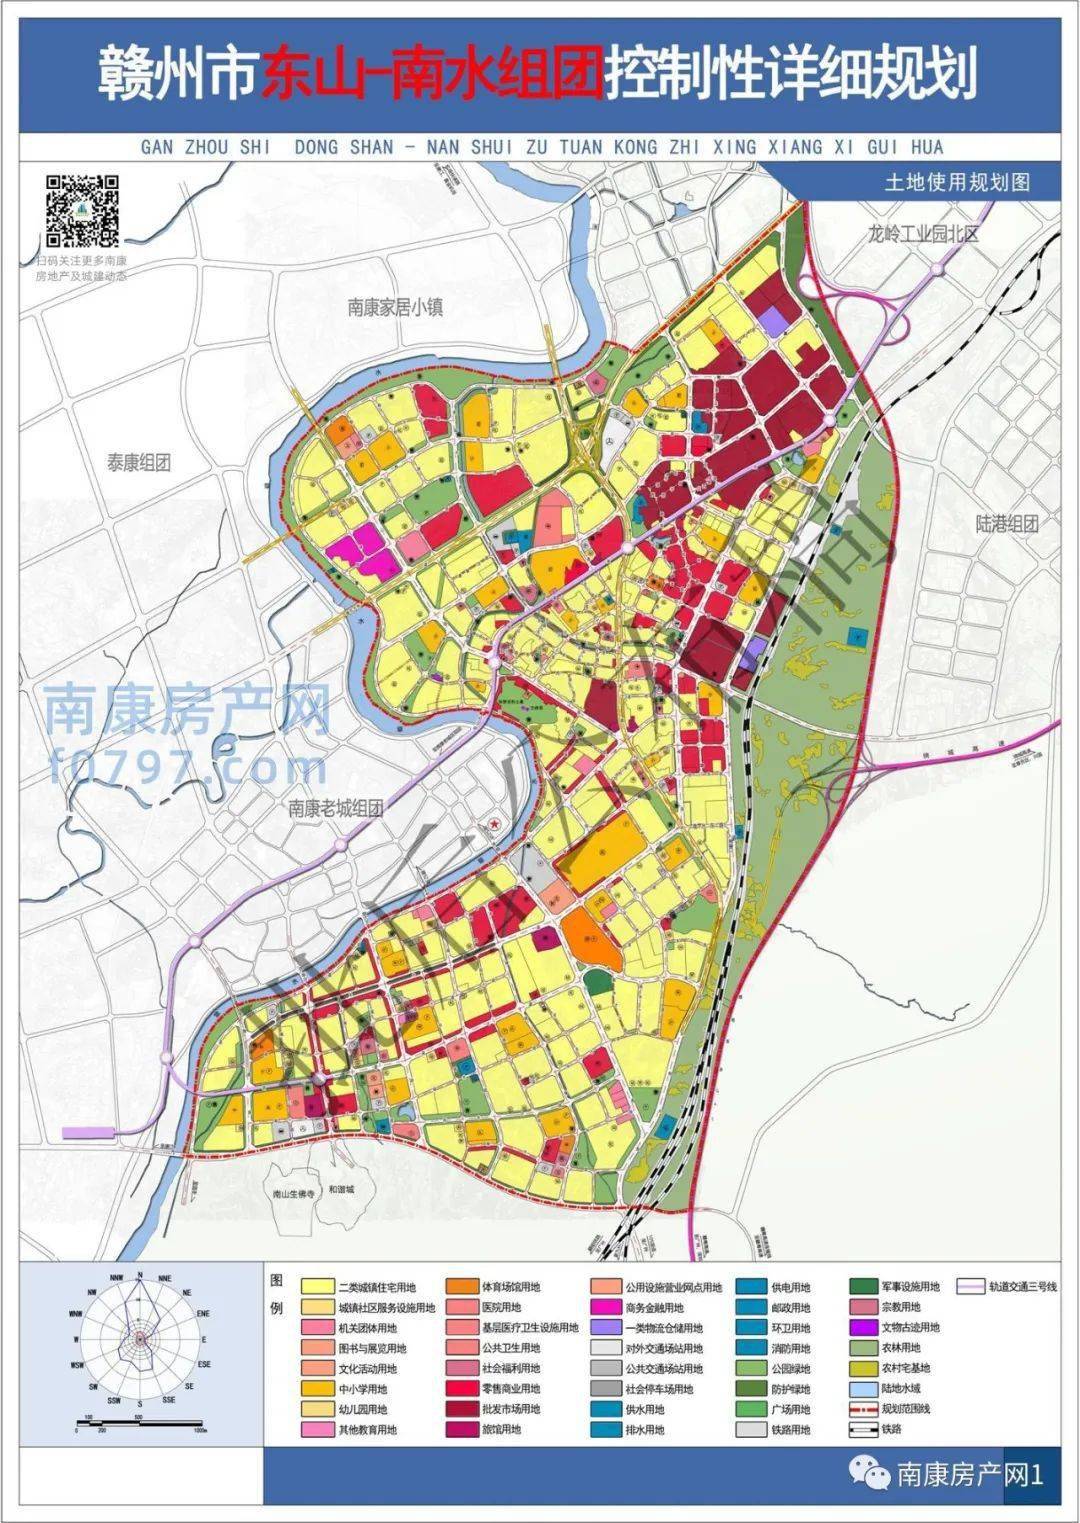 赣州市东山-南水组团控制性详细规划(附件1主要内容摘取)